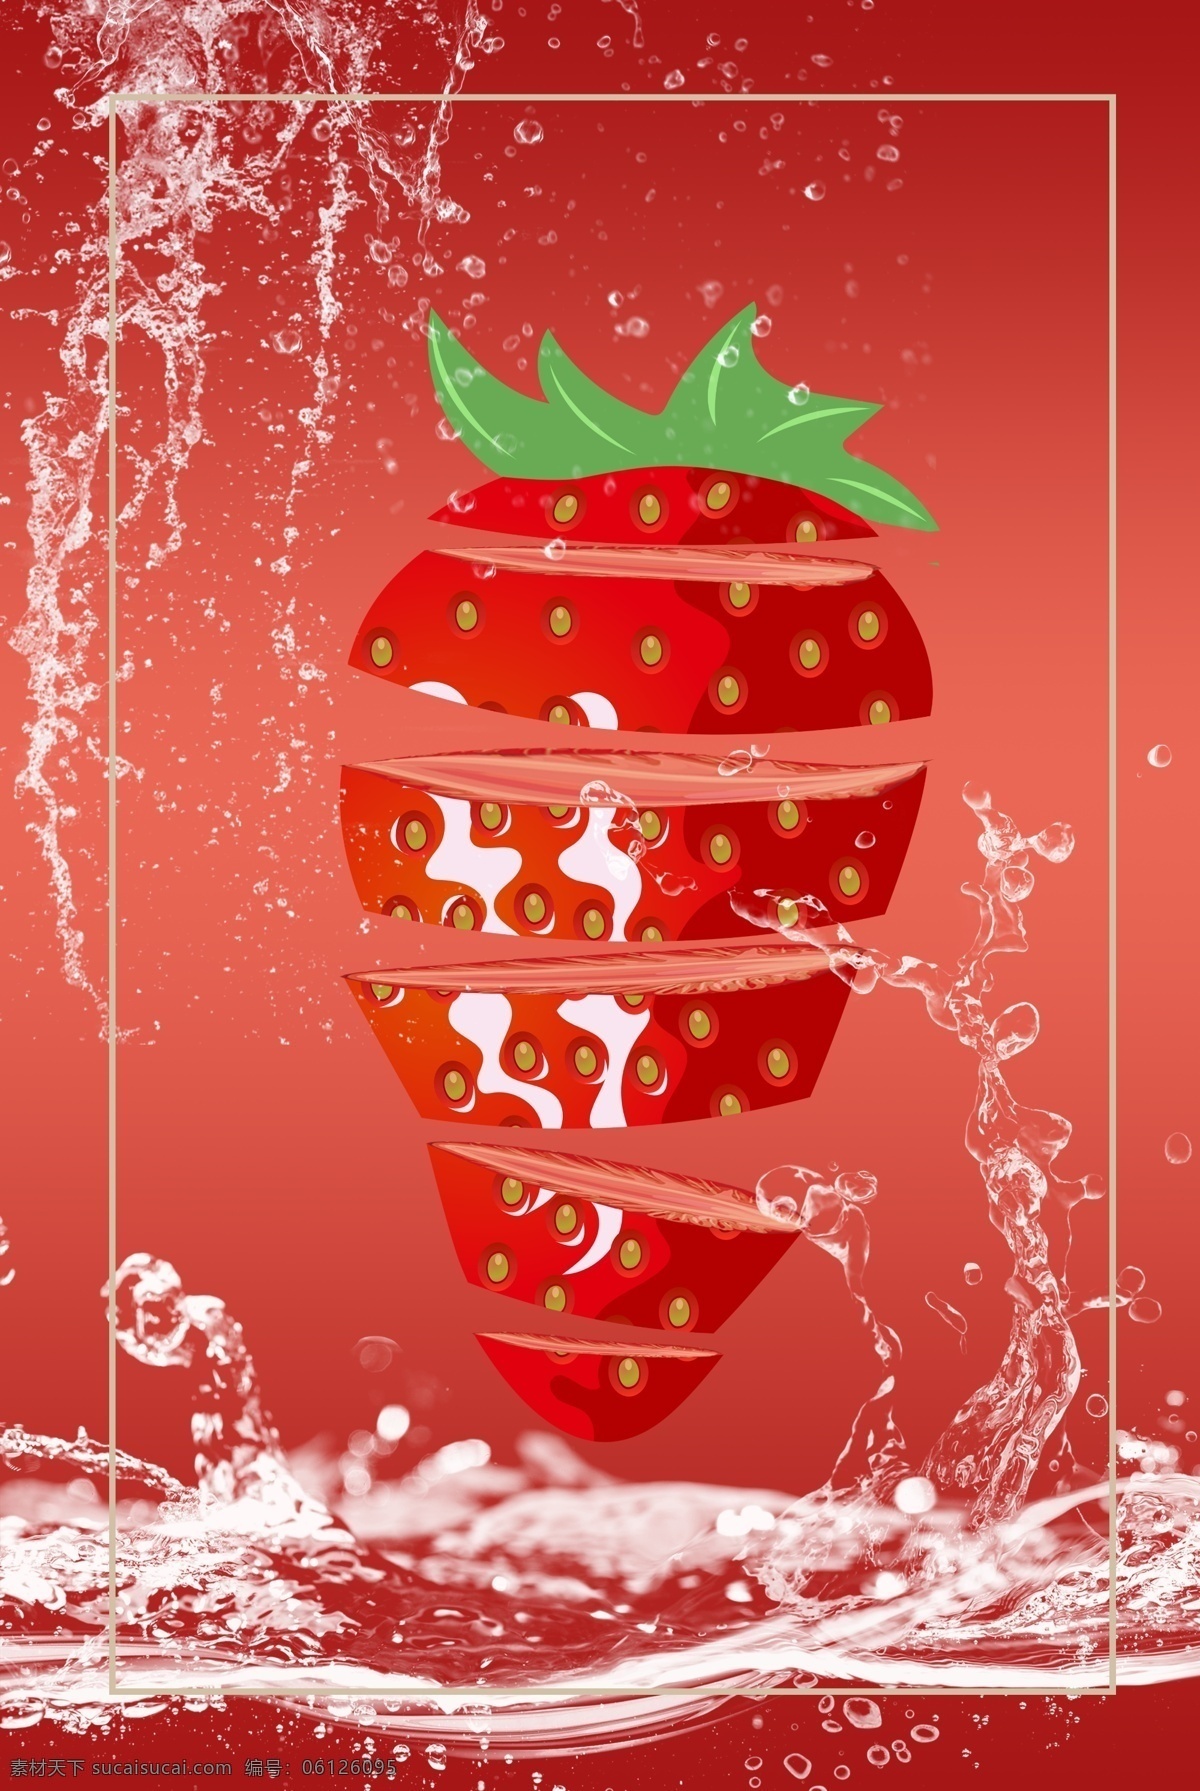 草莓 切片 饮品 食品 水果 背景 海报 水洗 水滴 鲜果